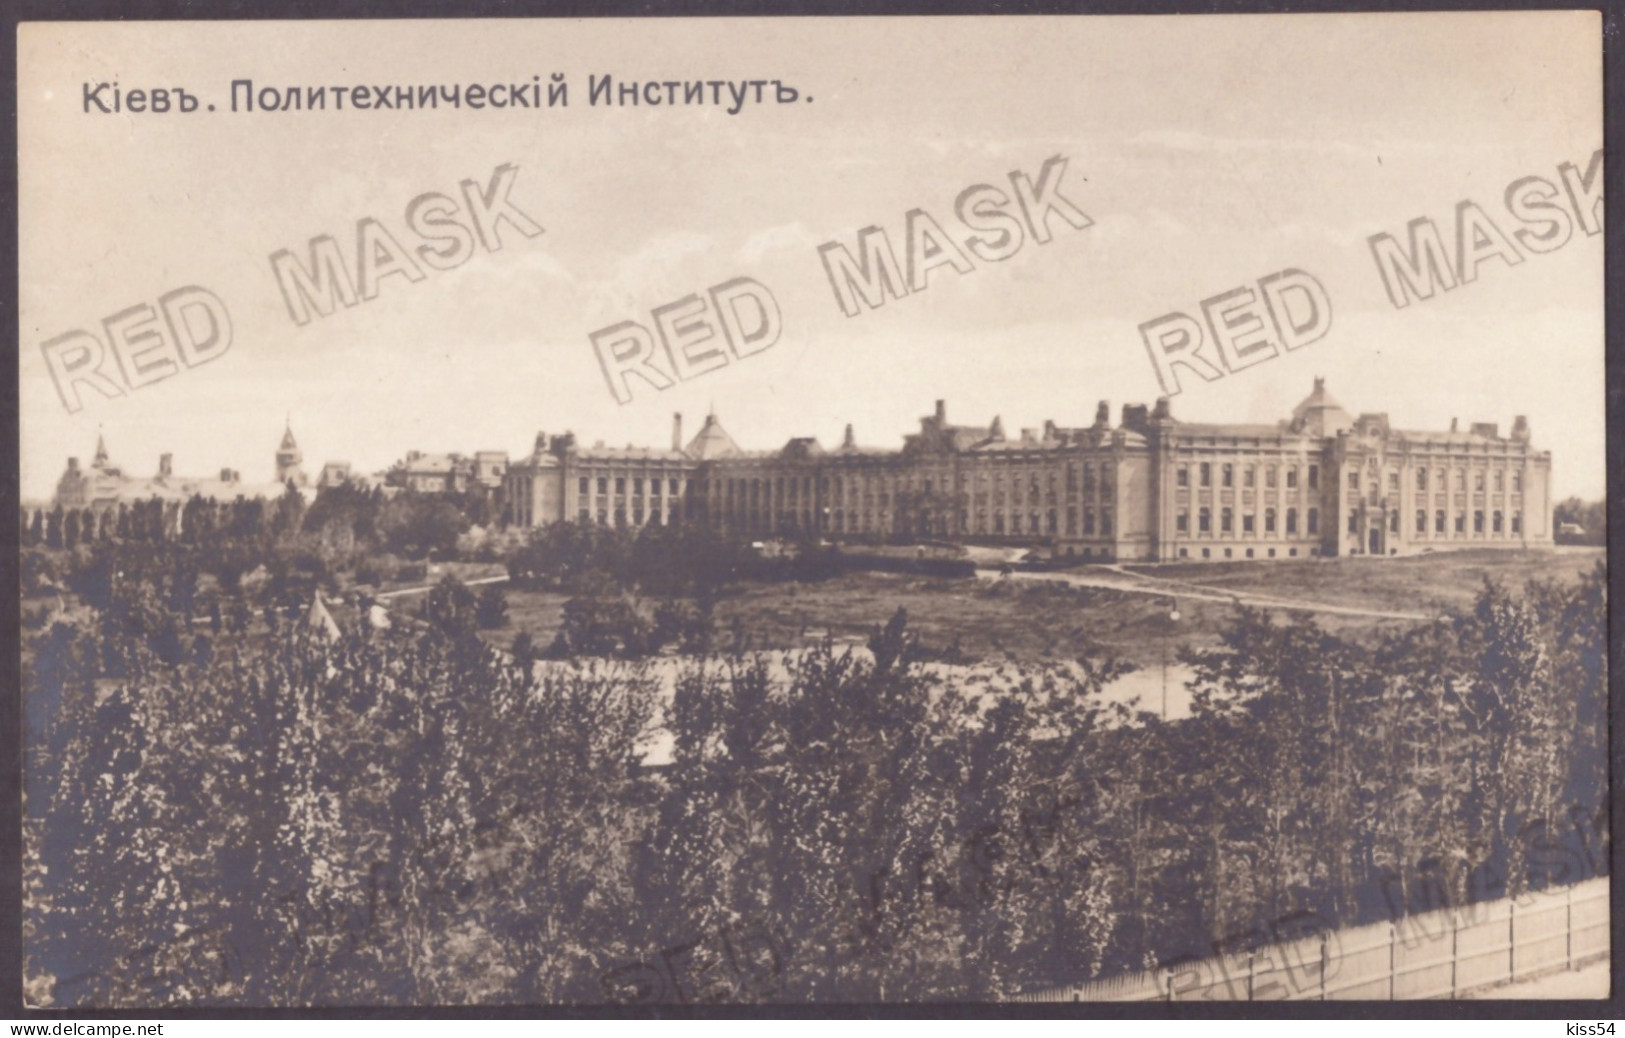 UK 61 - 23456 KIEV, POLYTECHNIC INSTITUTE, Ukraine - Old Postcard - Unused - Ucrania